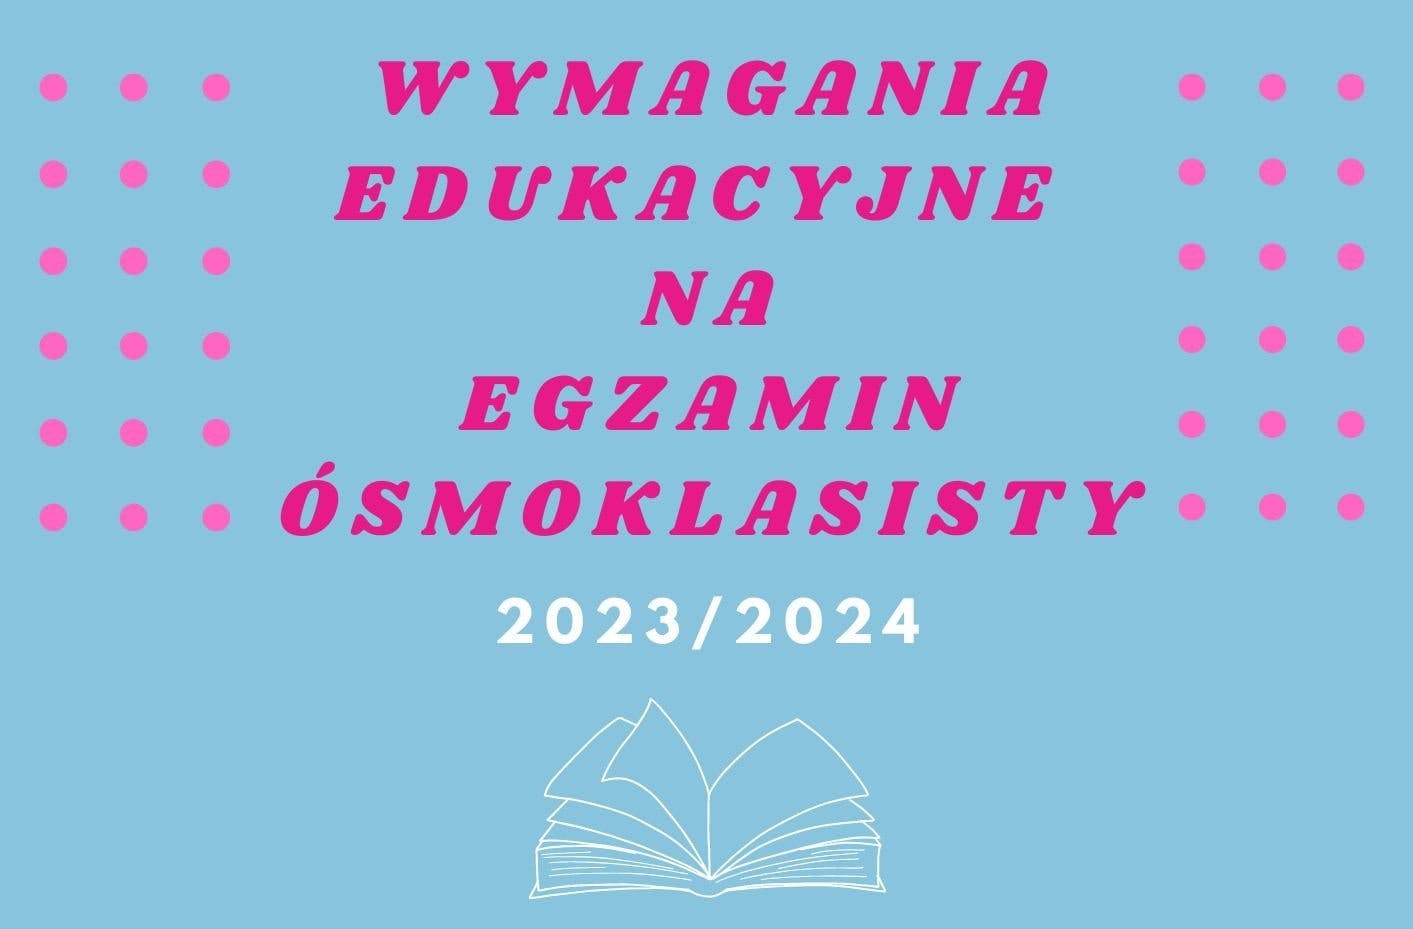 Obrazek dla artykułu pod tytułem Wymagania edulacyjne na egzamin  ósmoklasisty w roku 2023/2024